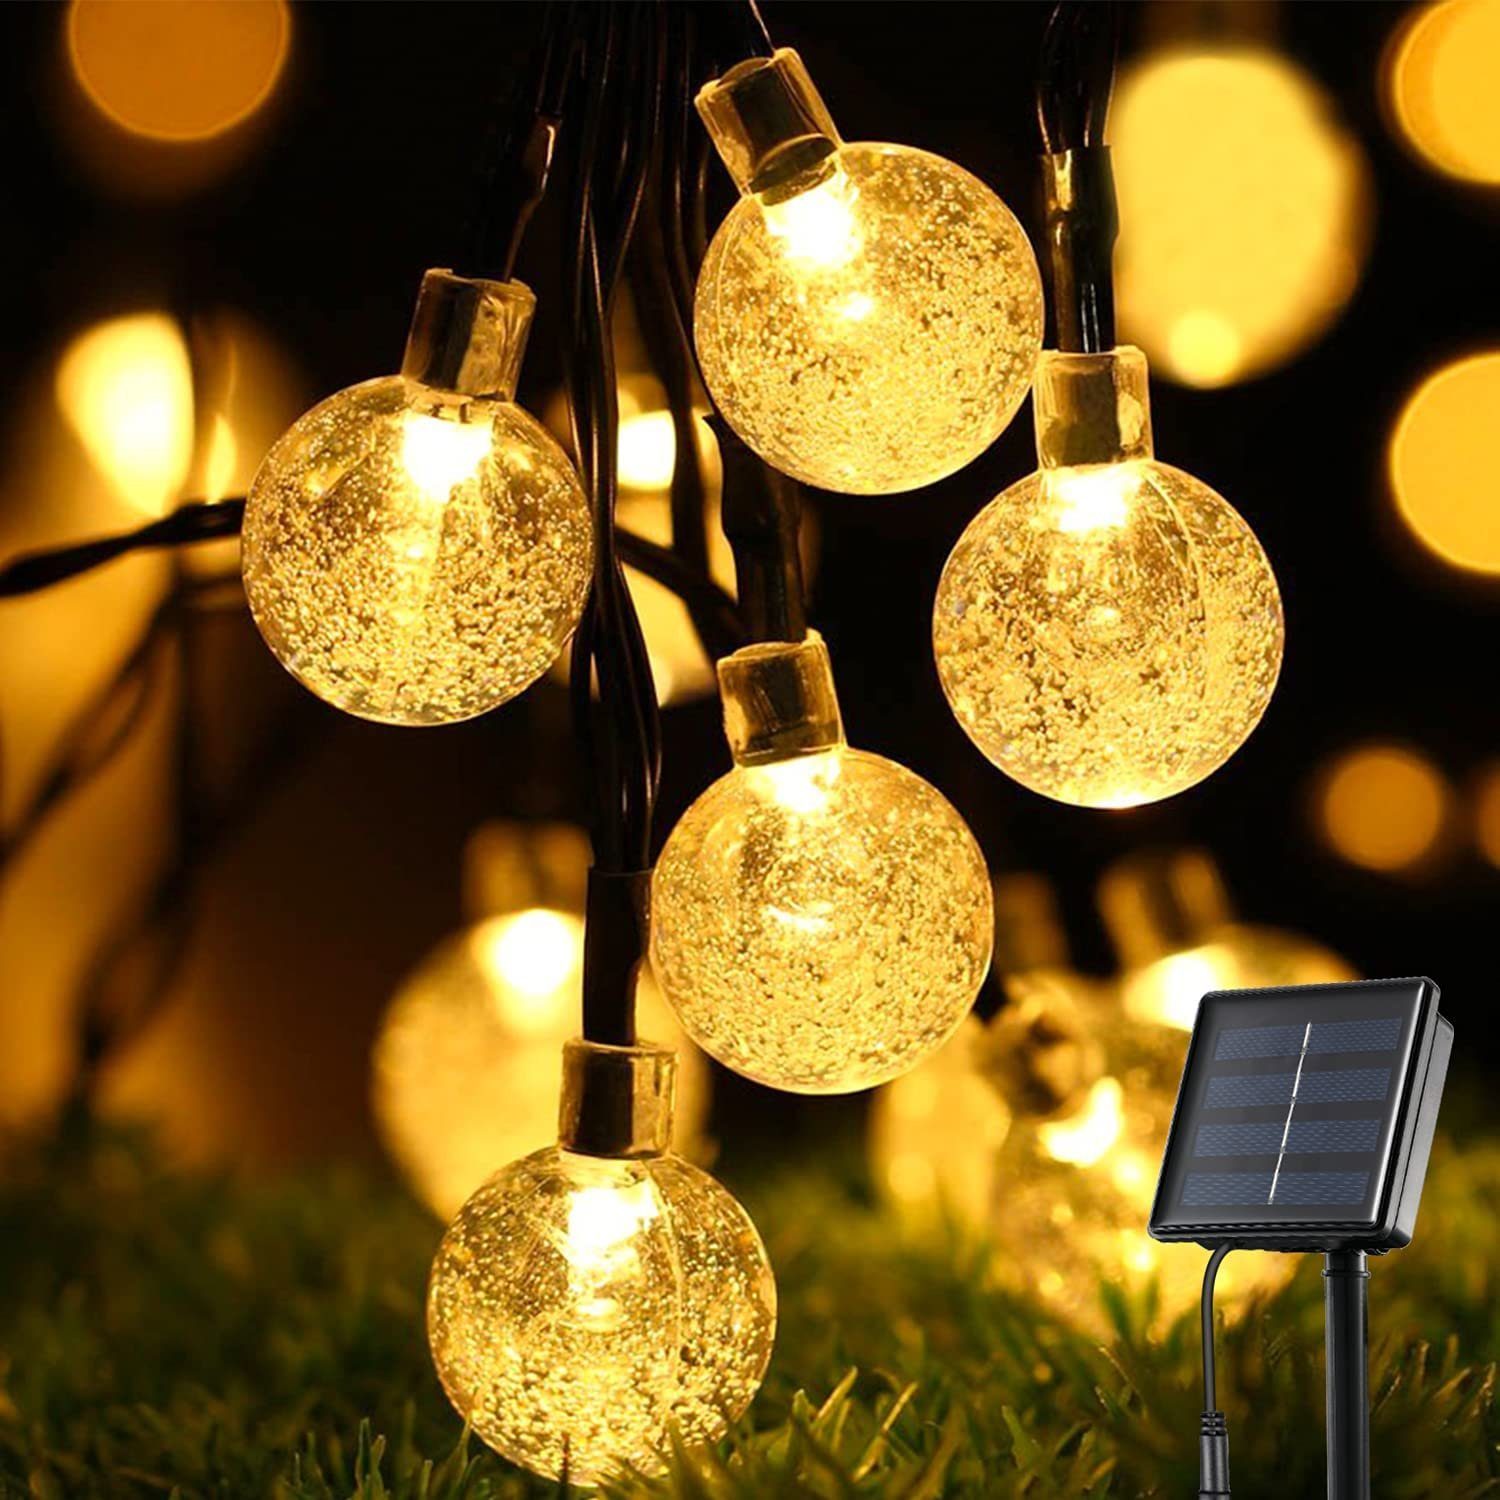 8 LED Lichterkette Orientalische Kugeln warmweiß Batterie silber gold 1,2m 